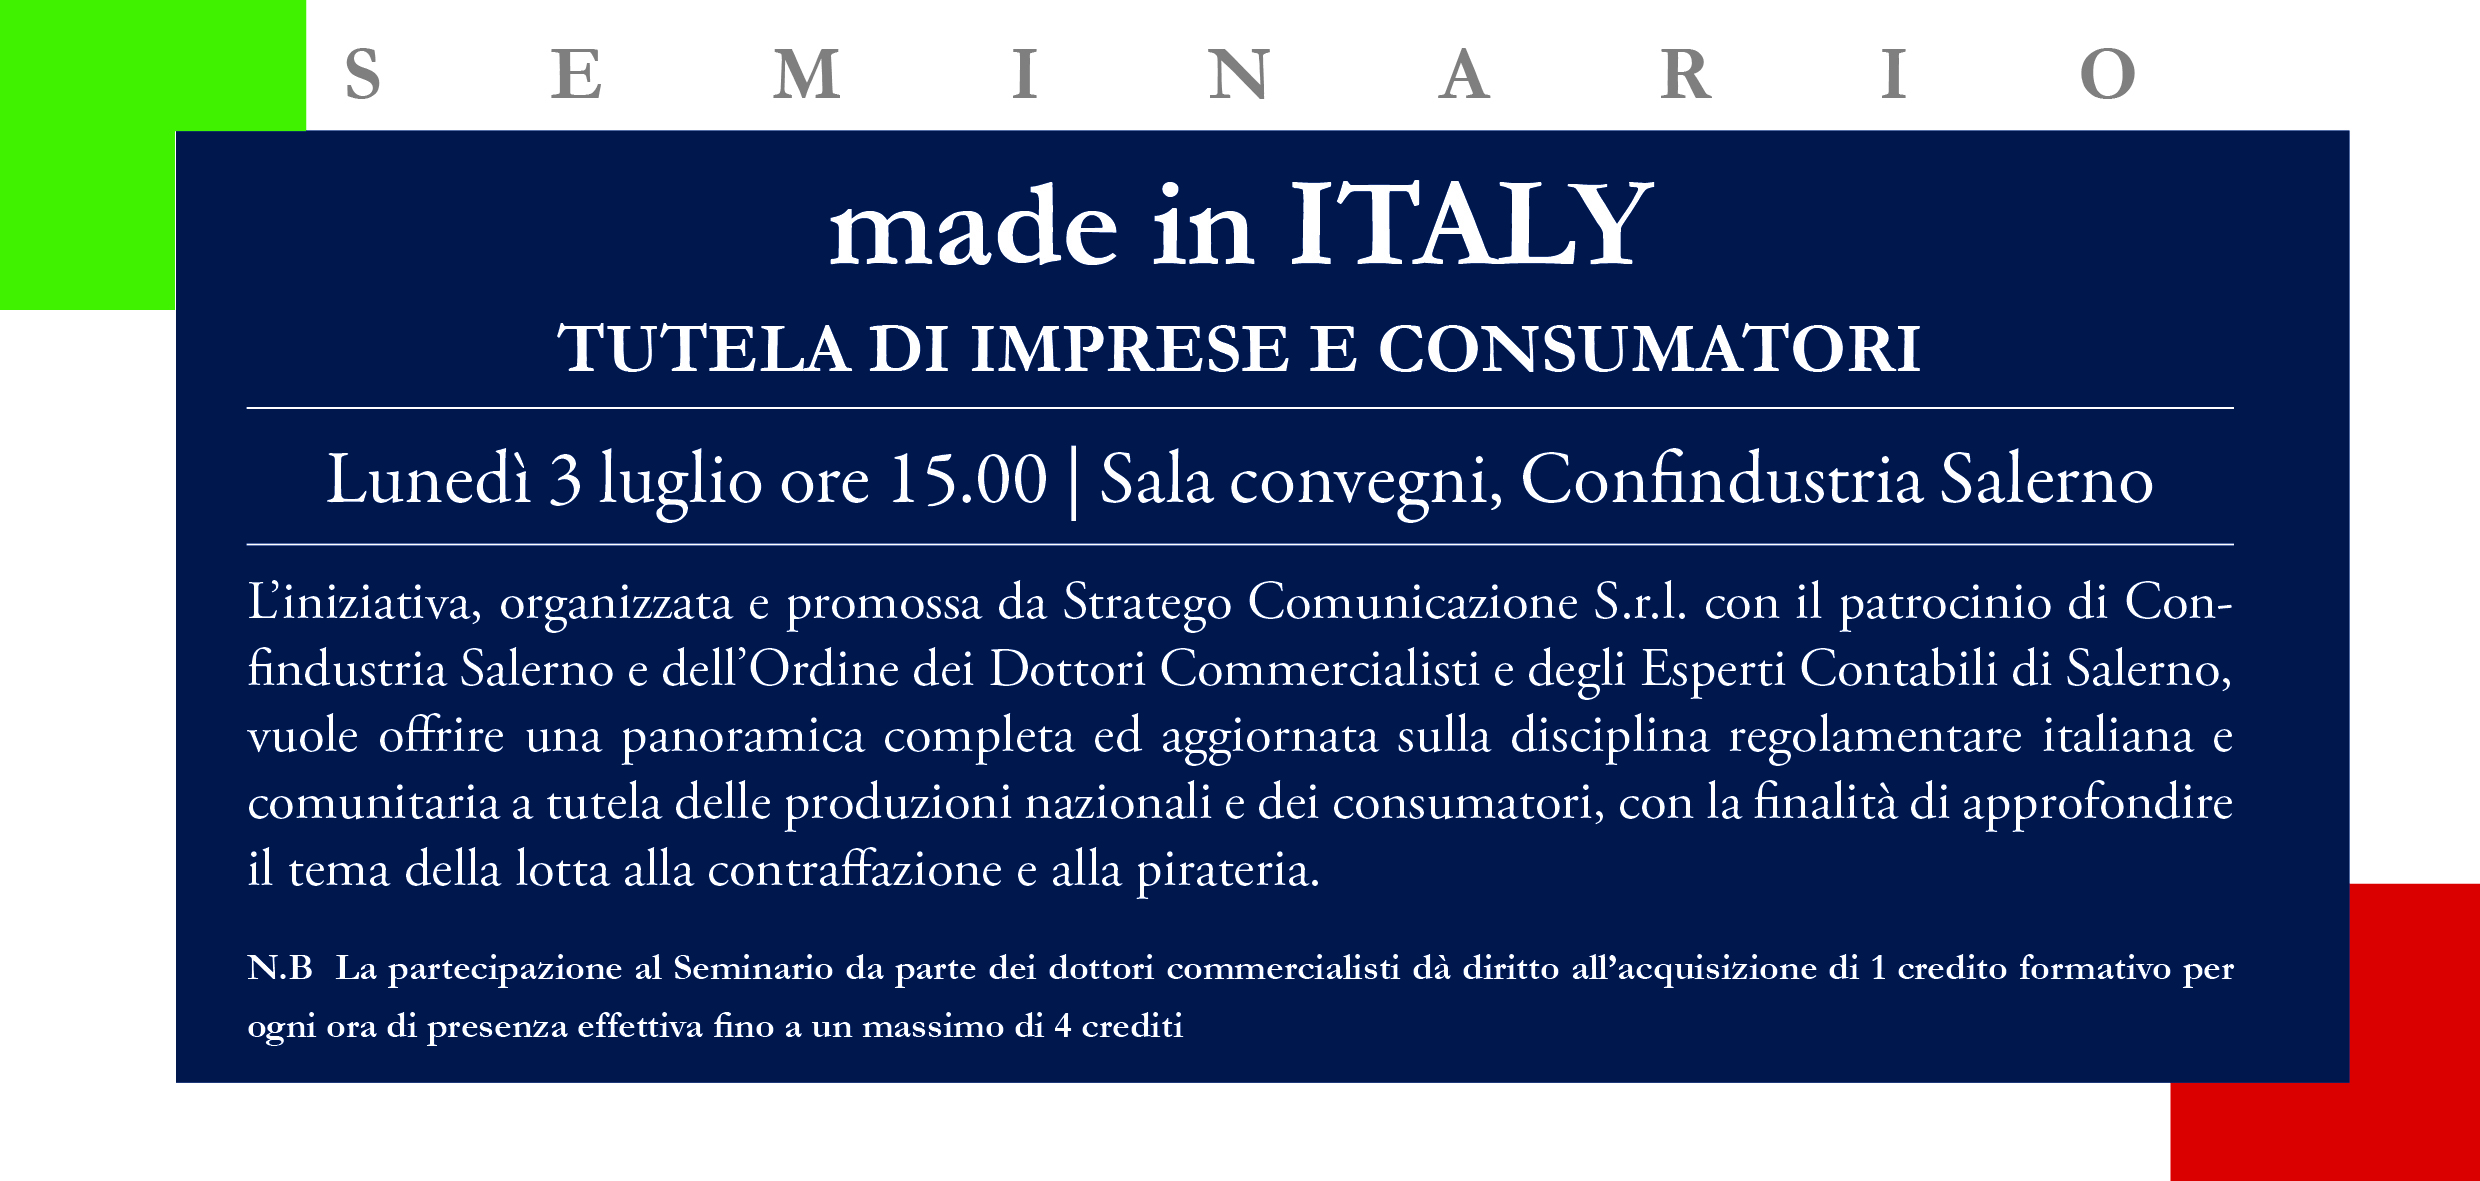 Al momento stai visualizzando “Made in Italy. tutela di imprese e consumatori”. Lunedì 3 luglio seminario in Confindustria Salerno